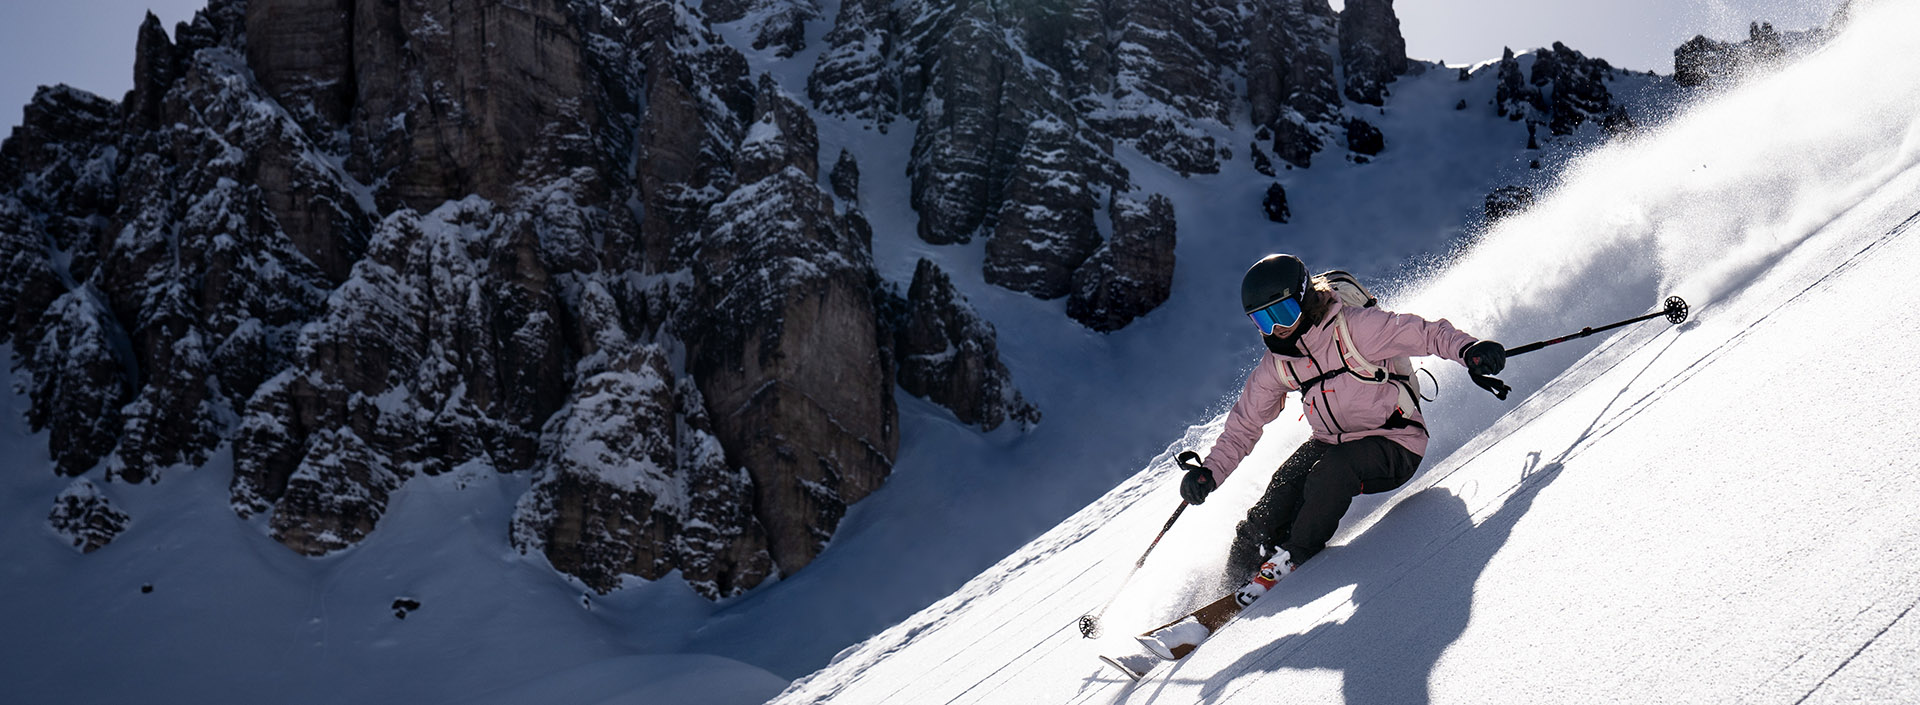 kobieta zjeżdżająca na nartach